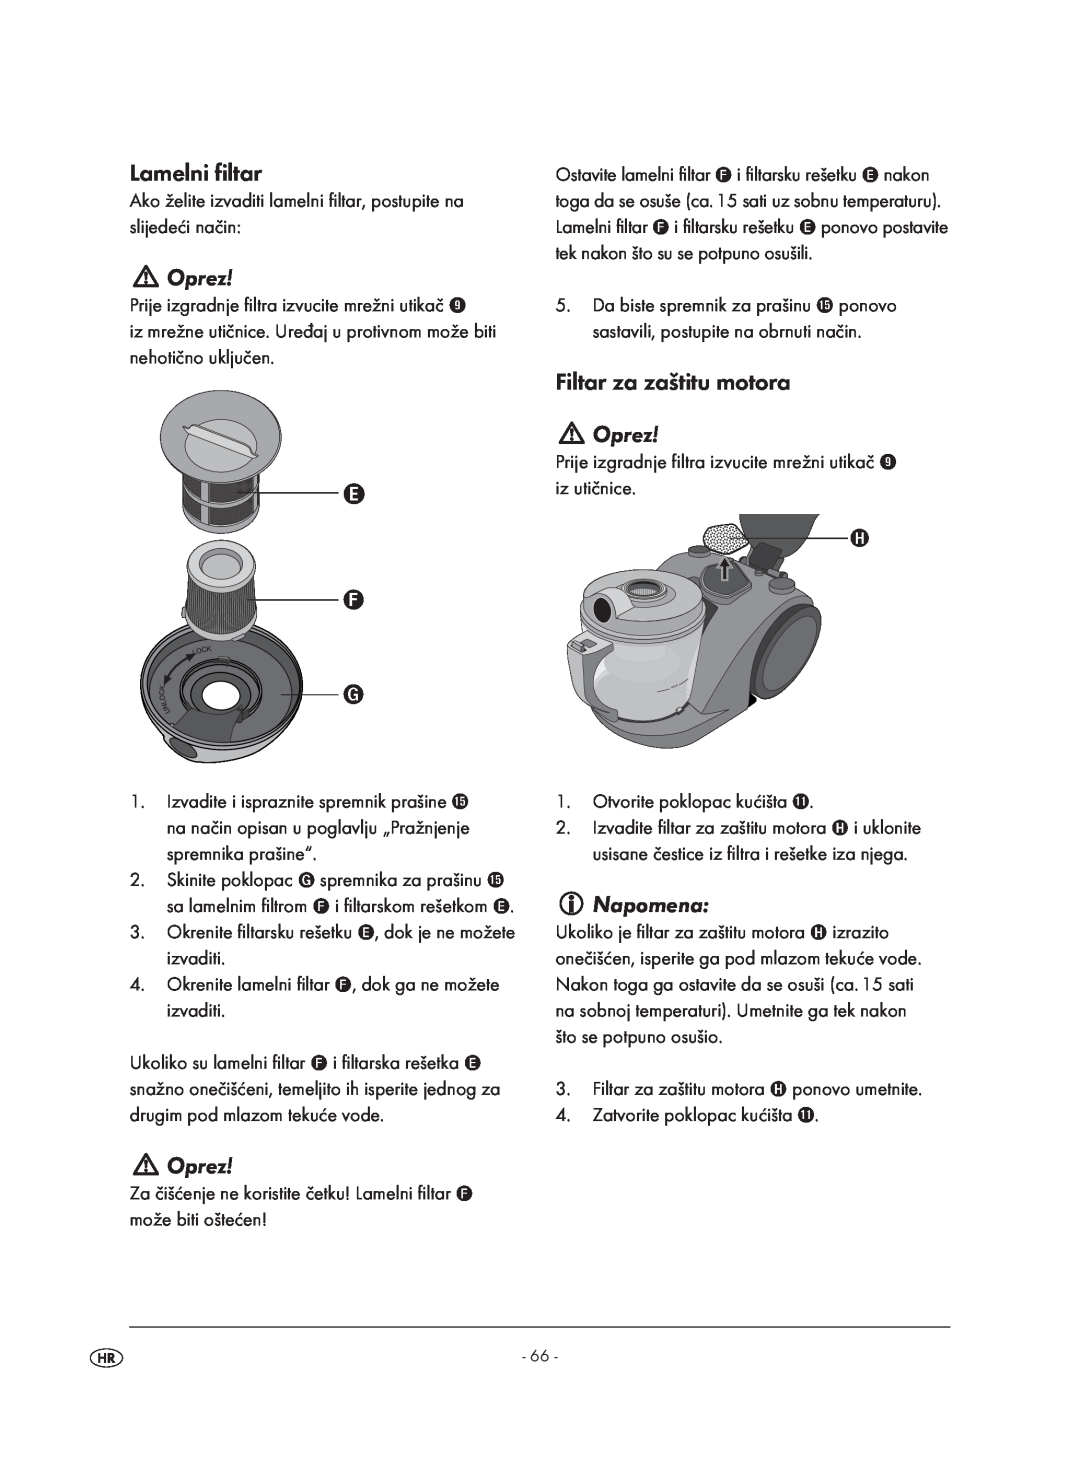 Kompernass KH 1410 operating instructions Lamelni filtar, Oprez, Filtar za zaštitu motora, Napomena 